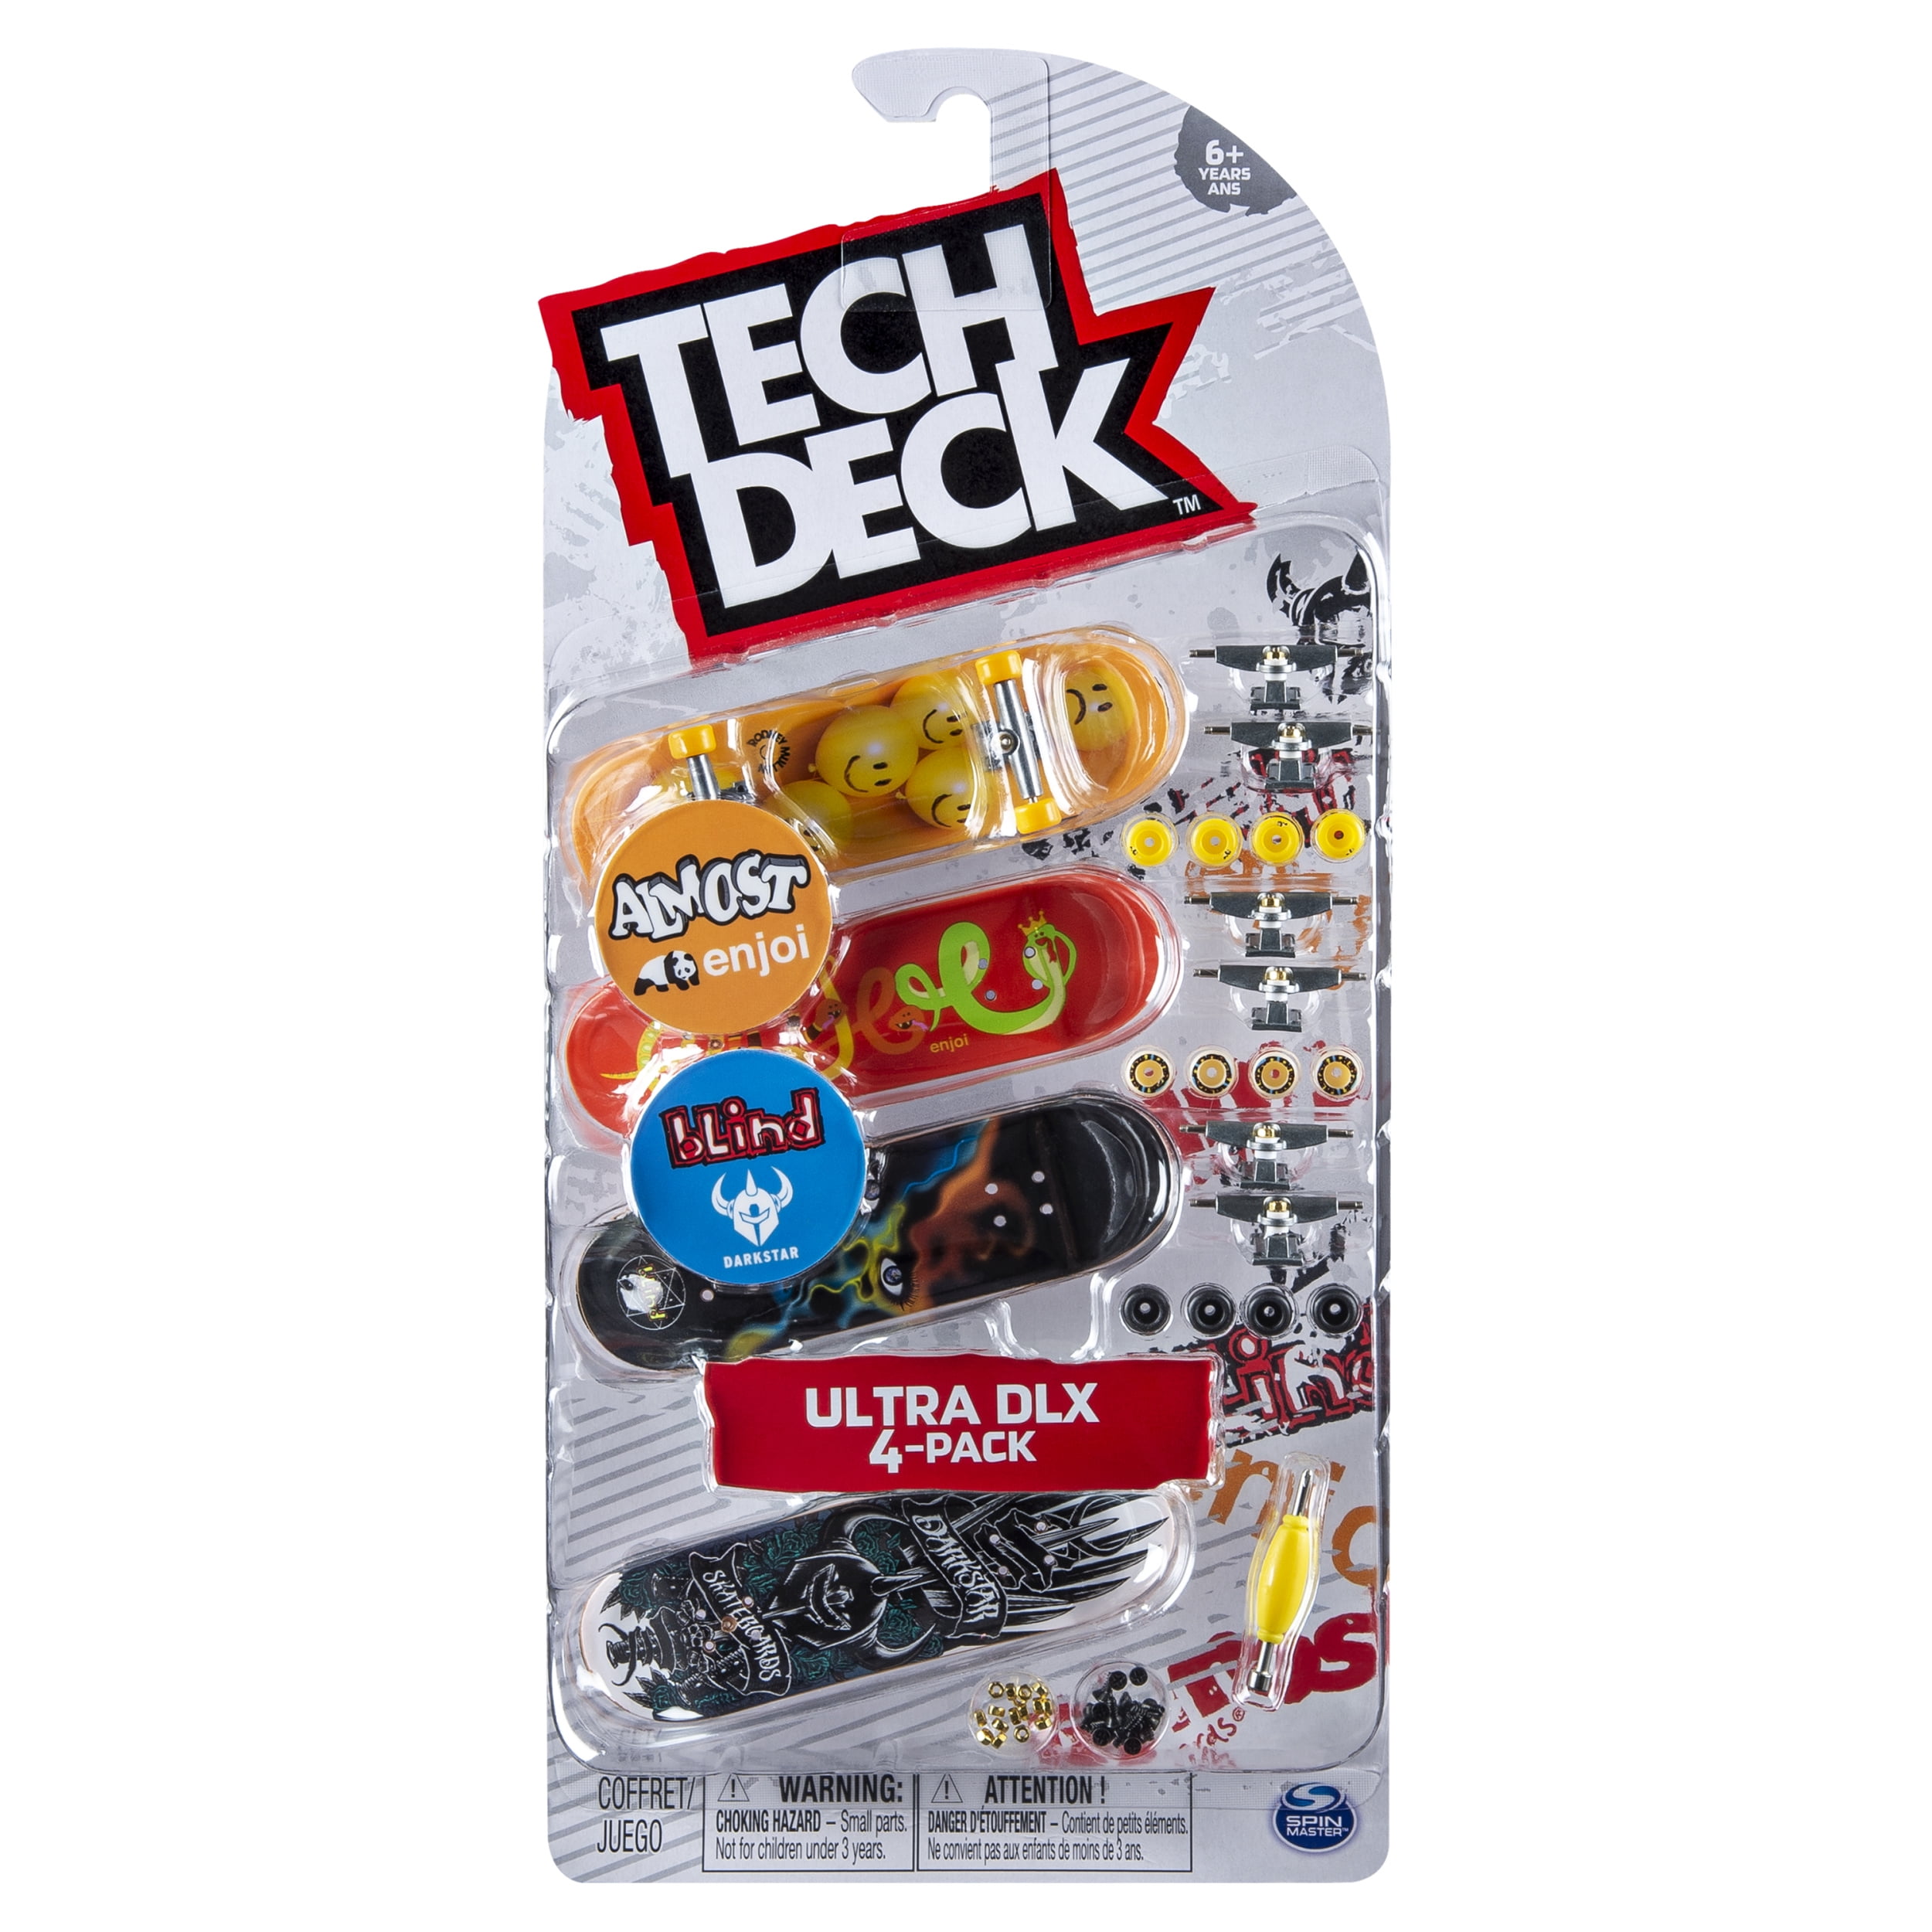 Tech Deck Ultra DLX 4-Pack BLIND Skulls Skateboards Fingerboards Set NEW SEALED 